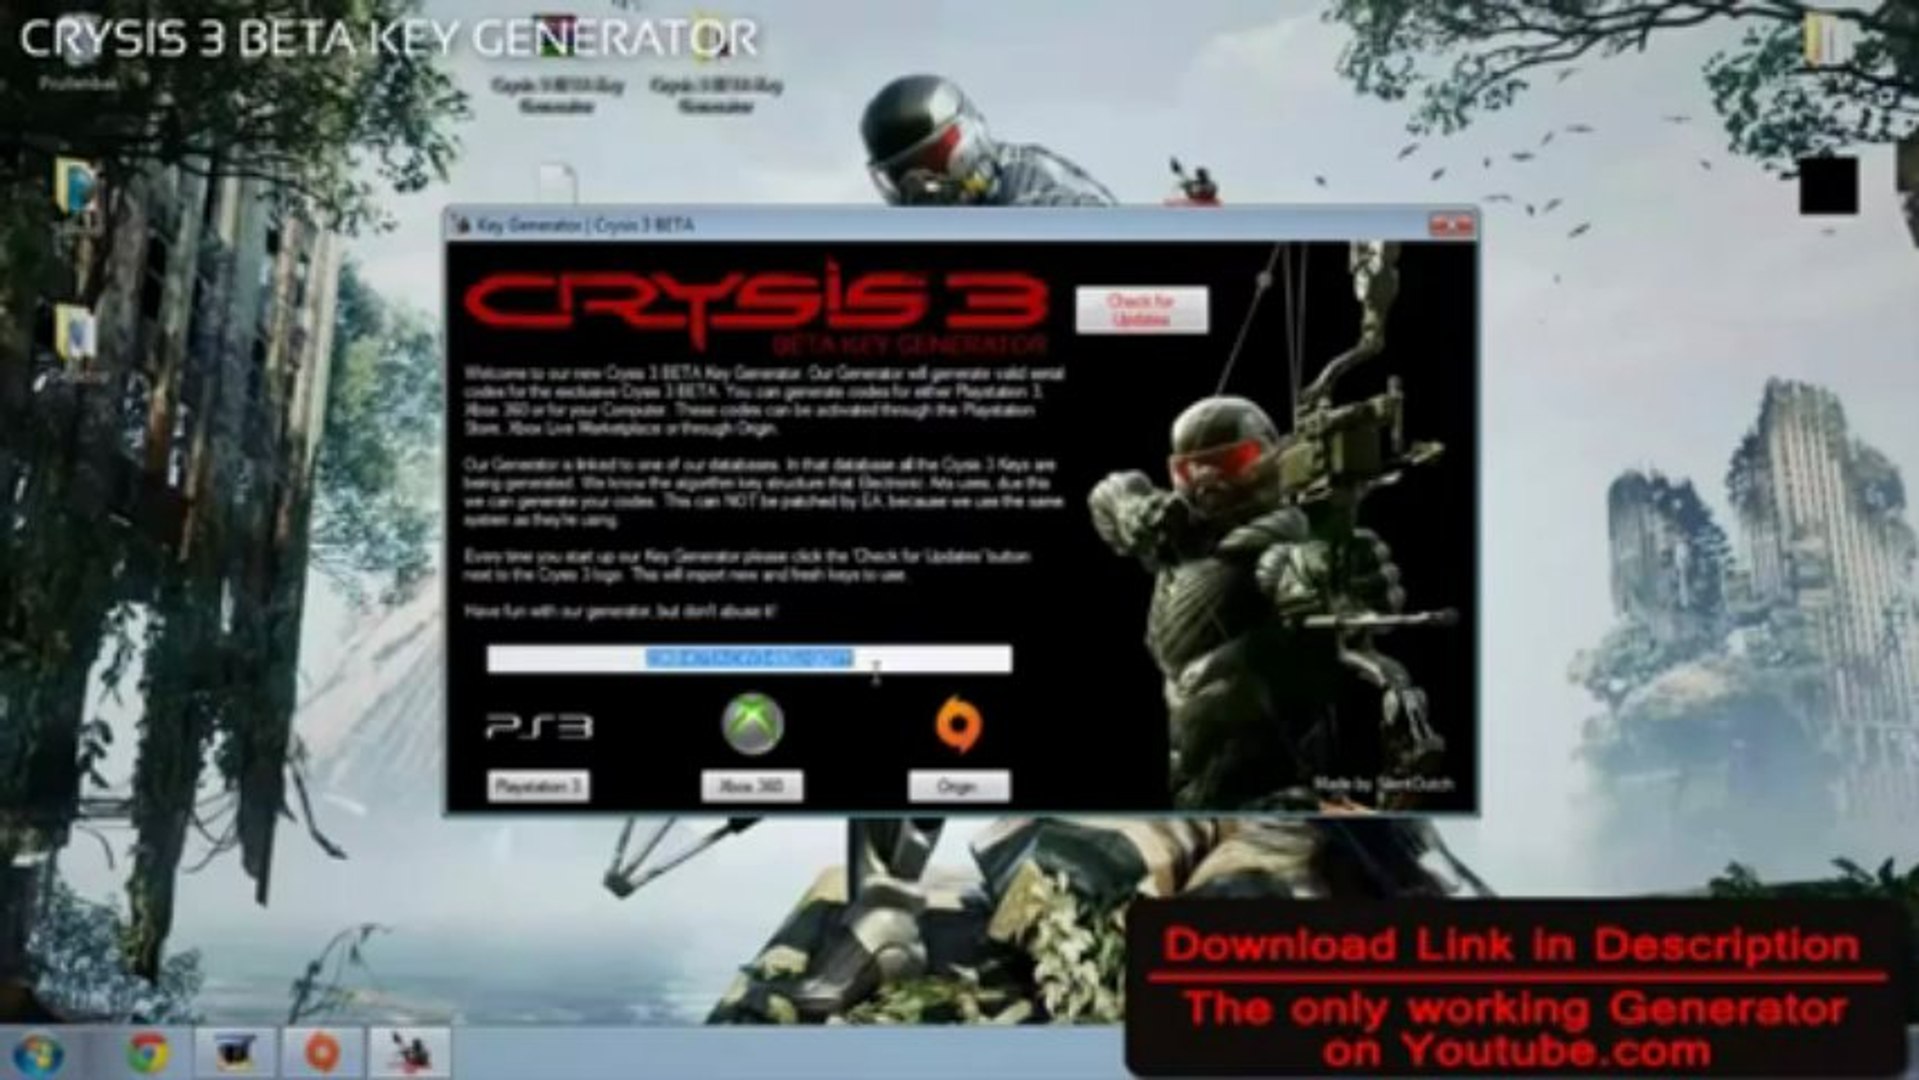 Crysis 3 origin key generator reviews